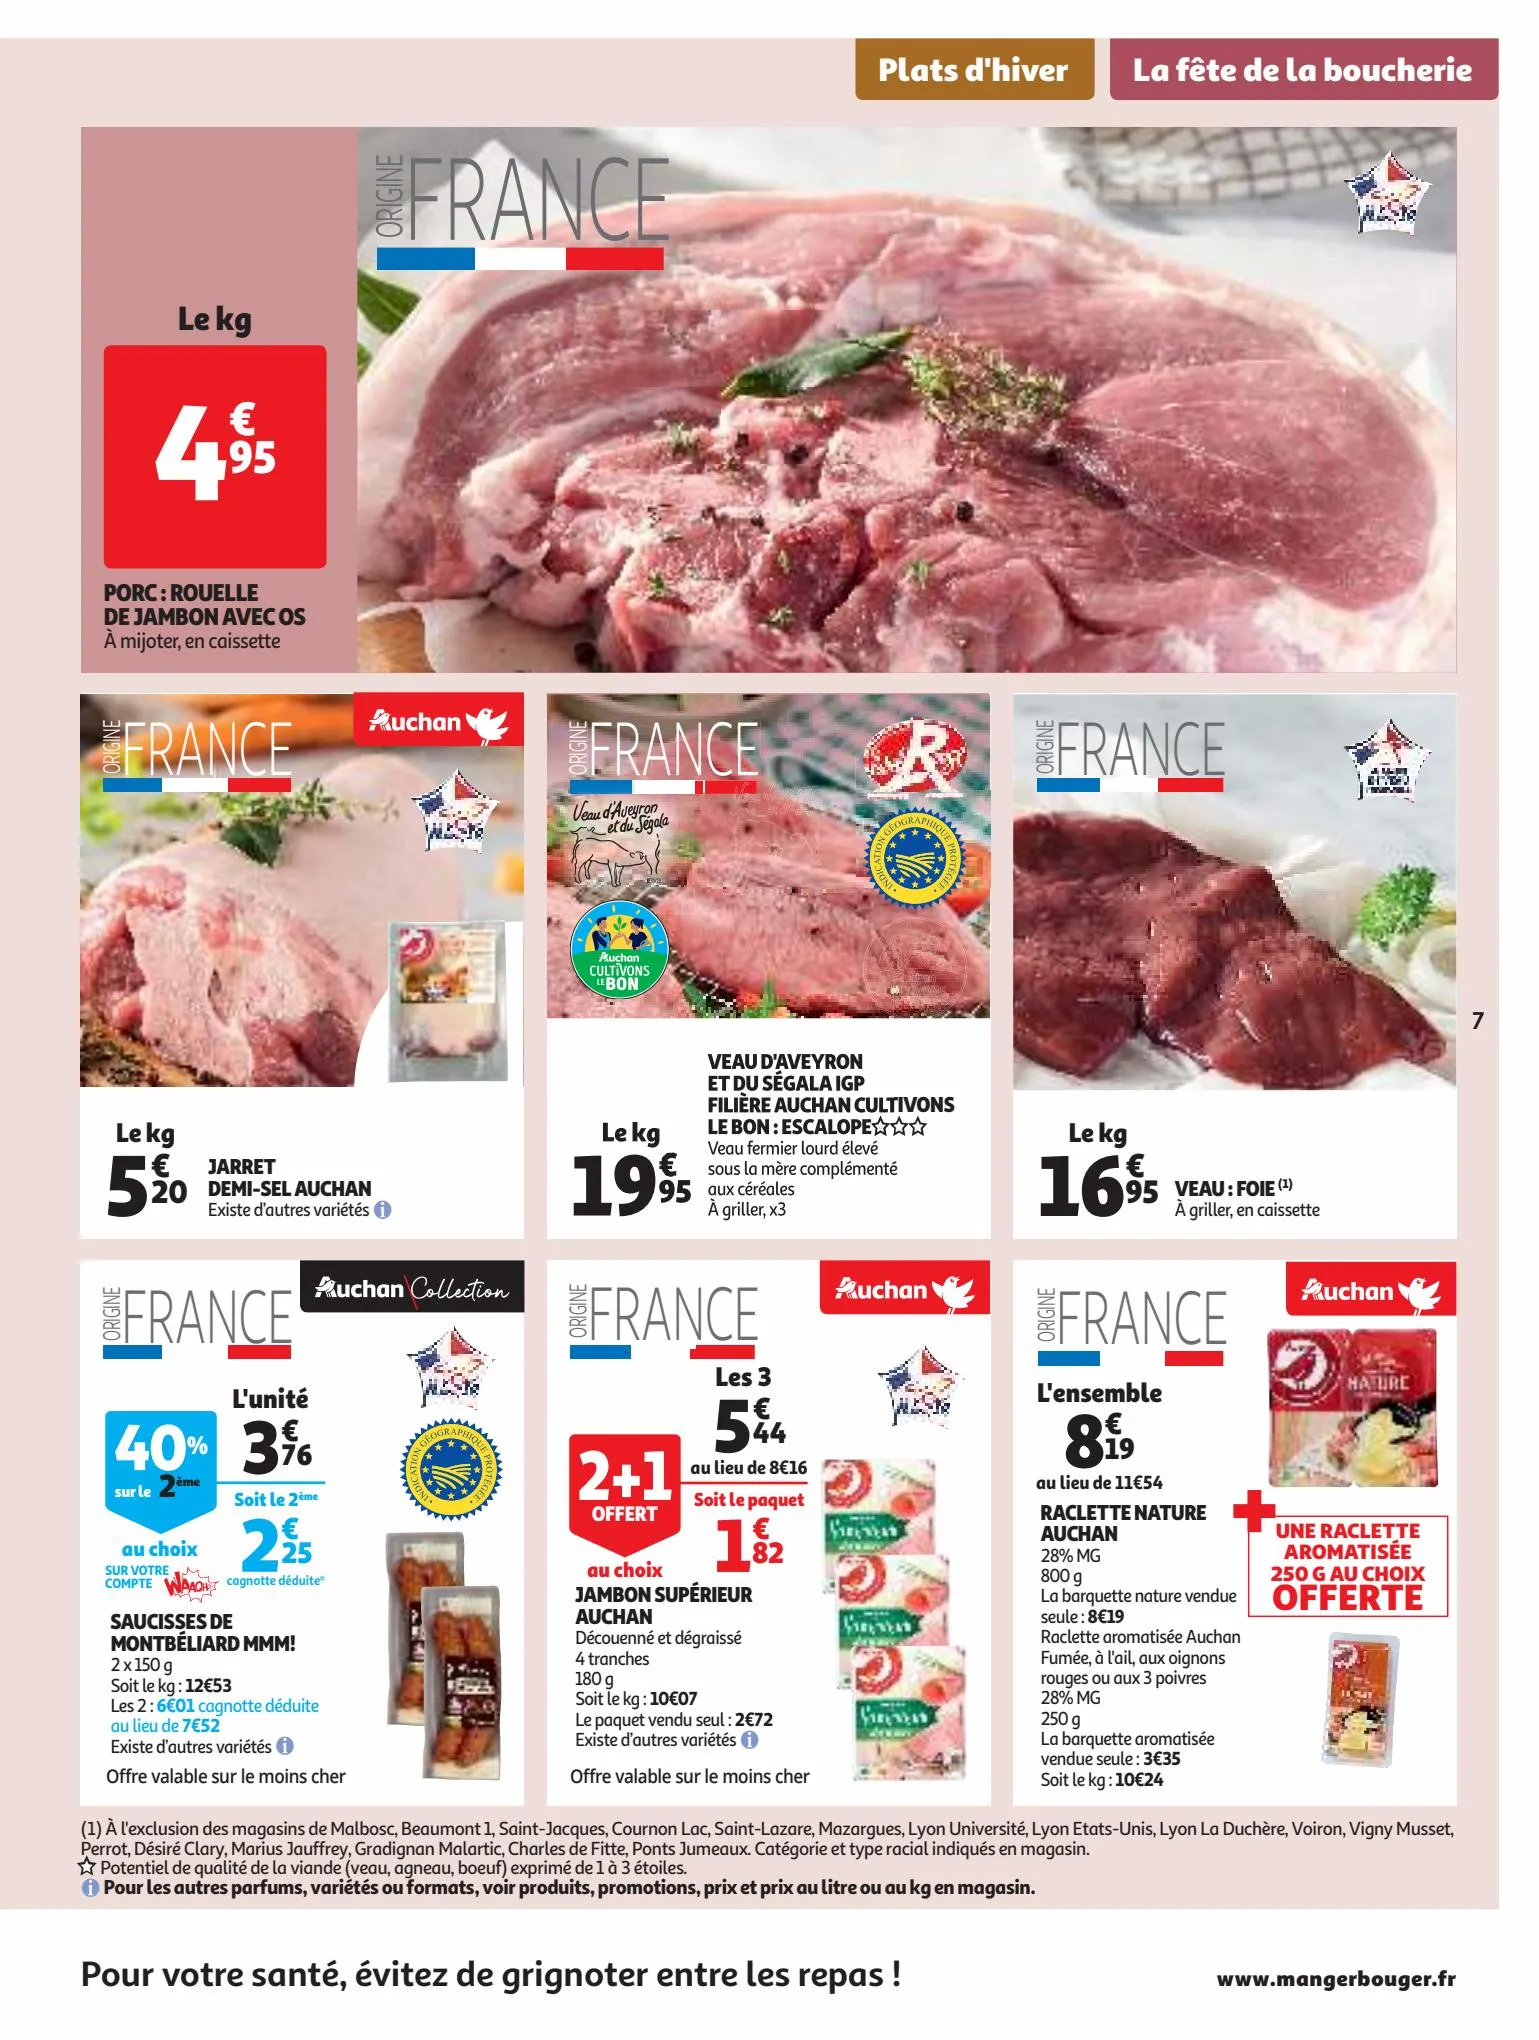 Catalogue 25 Jours Auchan, page 00007